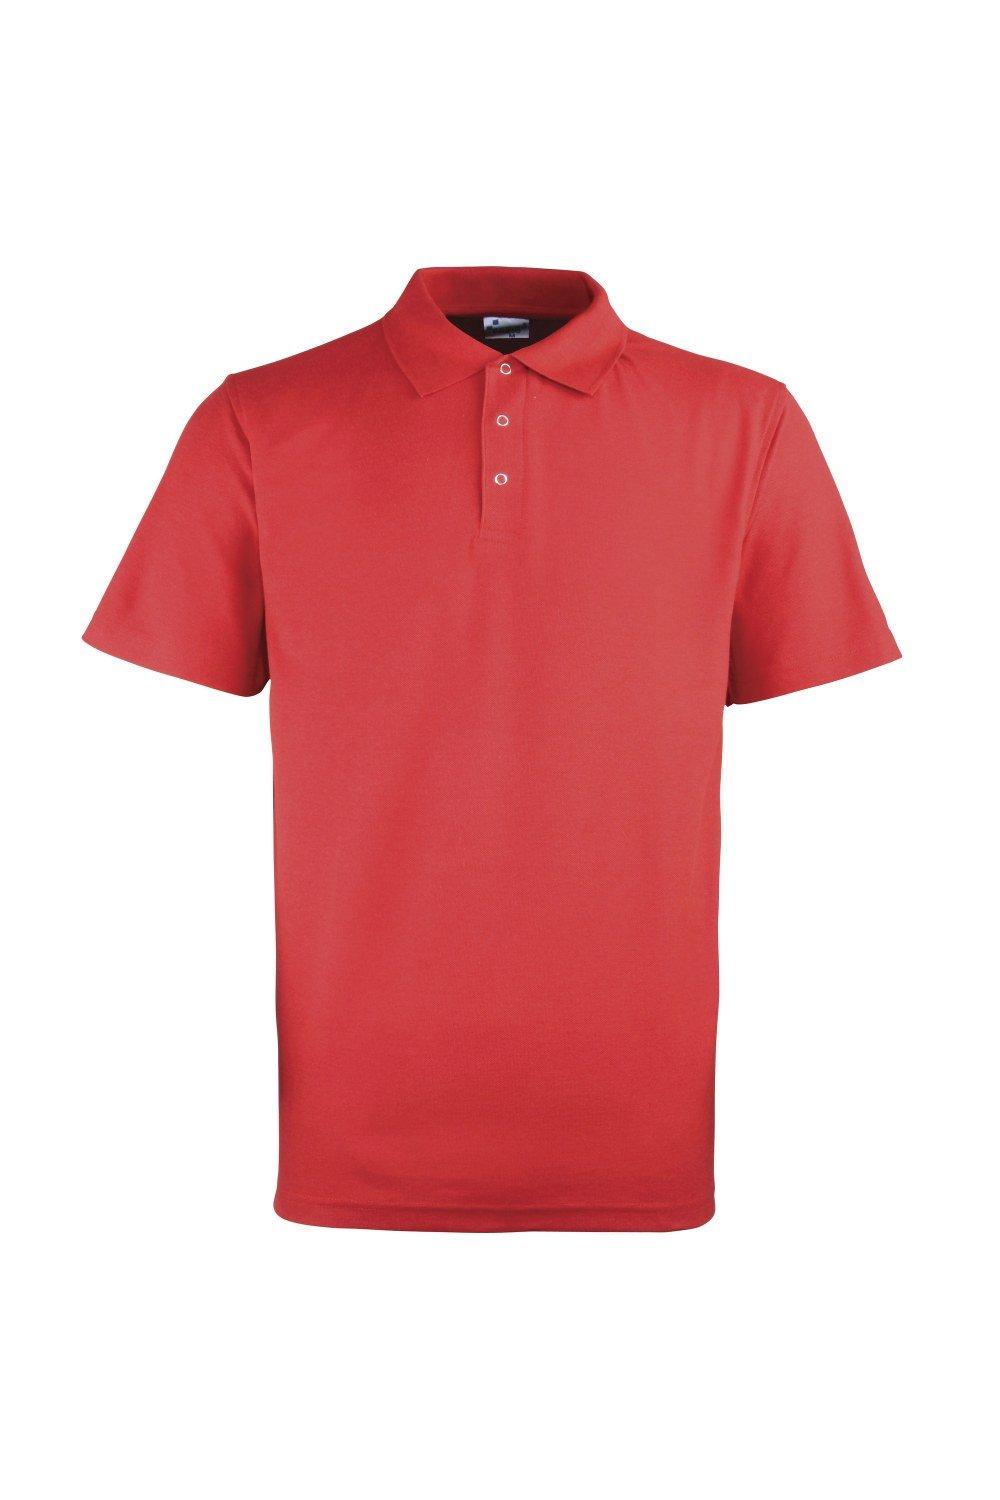 Однотонная рубашка-поло из тяжелого пике с заклепками Premier, красный рубашка поло спрут 120626 54 2xl синий